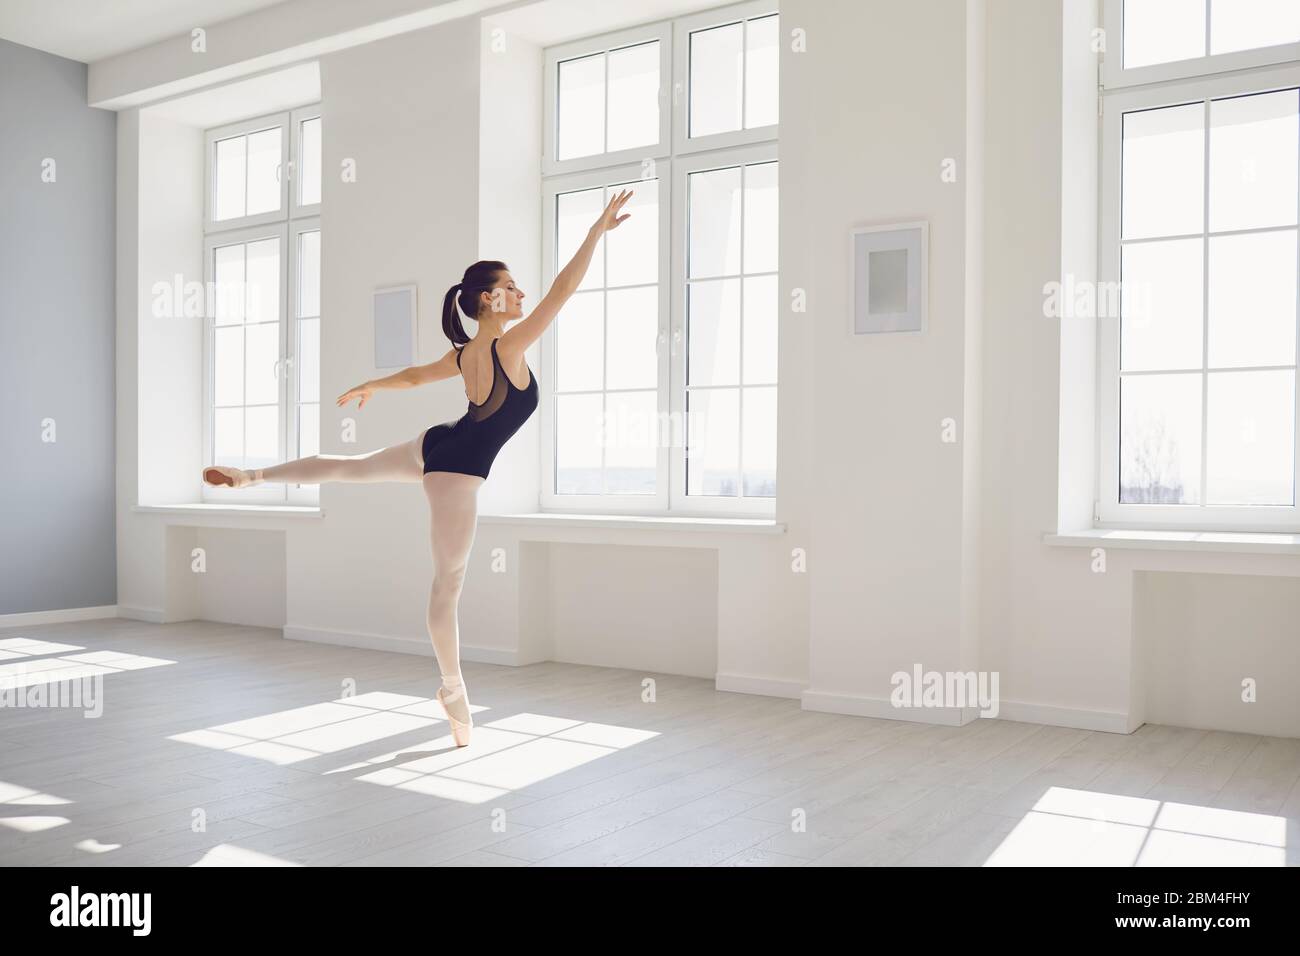 Ballerine. La jeune danseuse de ballet élégante répète une performance dans un studio blanc avec des fenêtres. Répétition de danse en classe studio. Banque D'Images